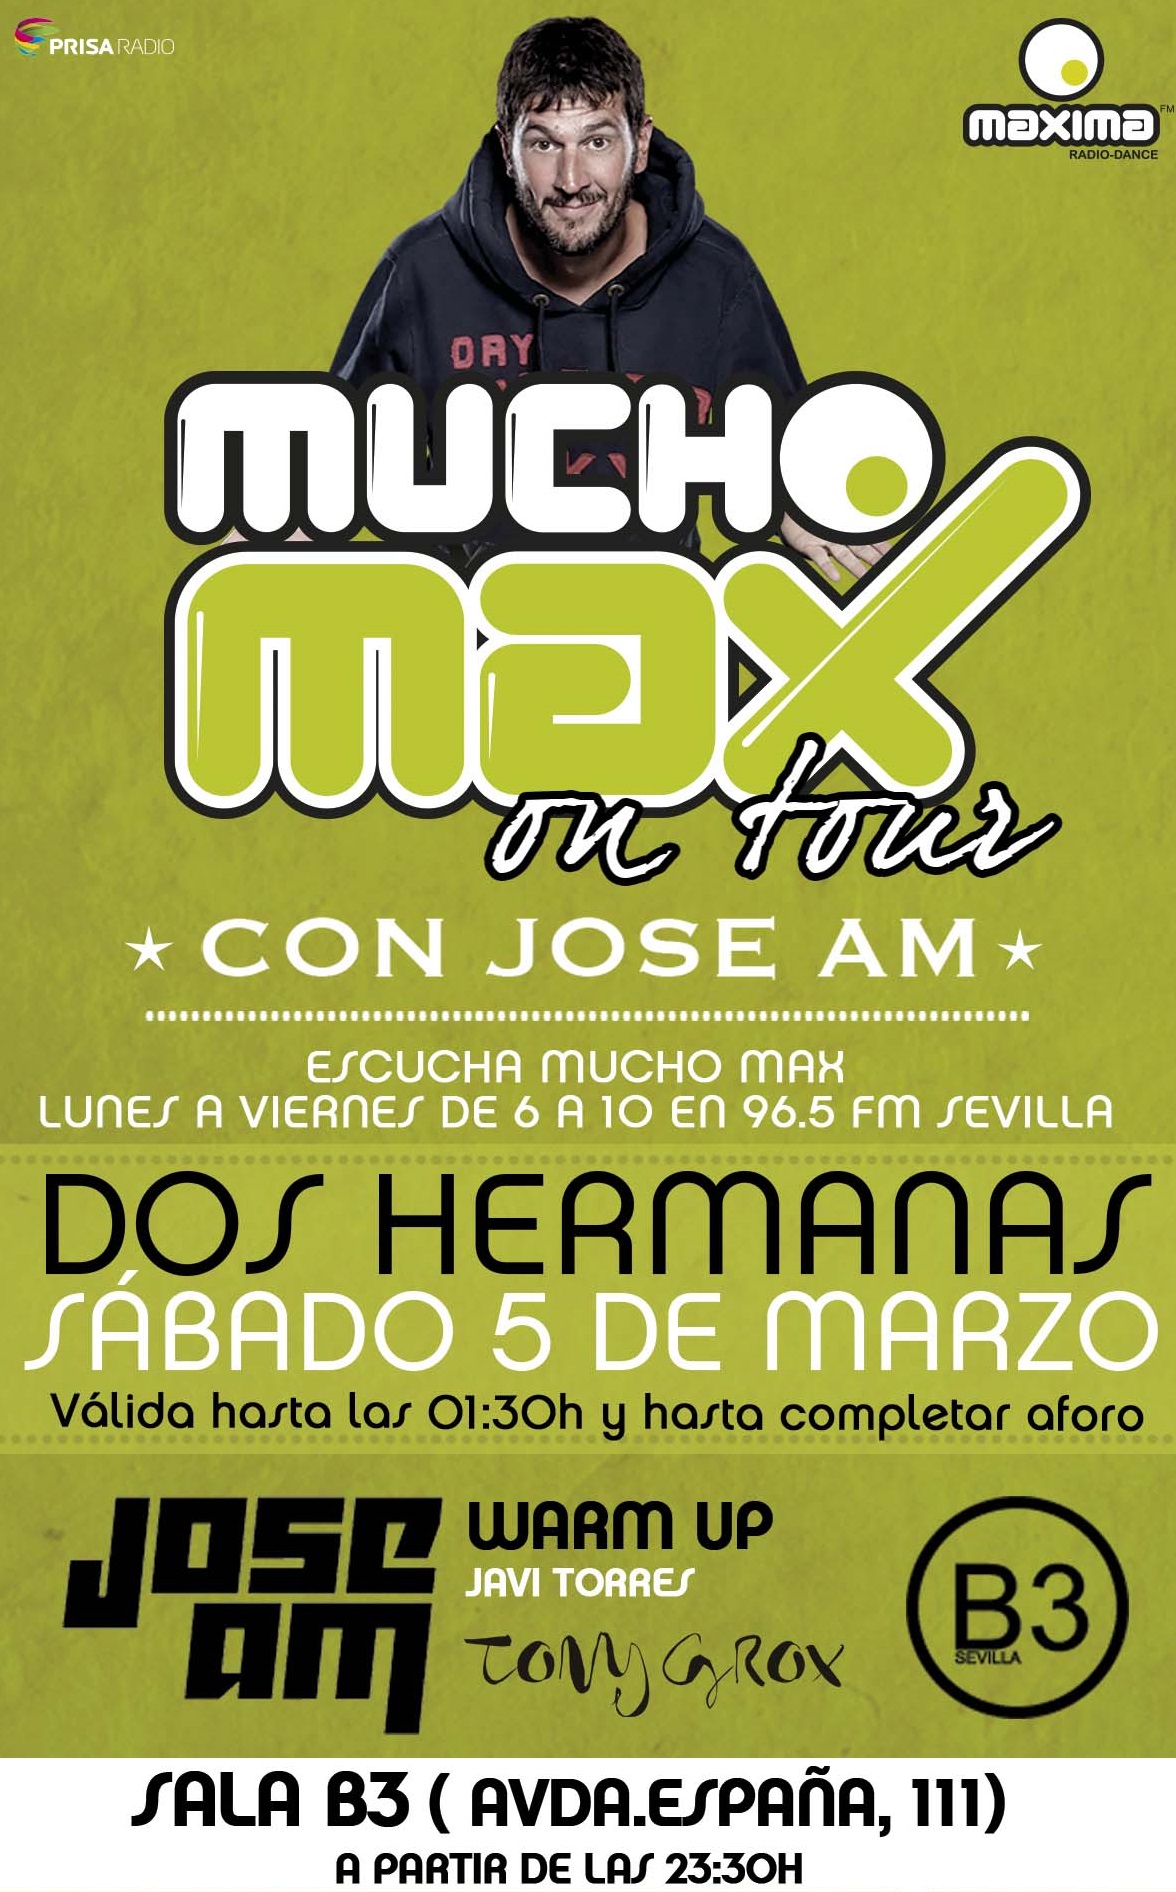 Mucho Max on Tour en Sevilla! Sábado 5 de Marzo